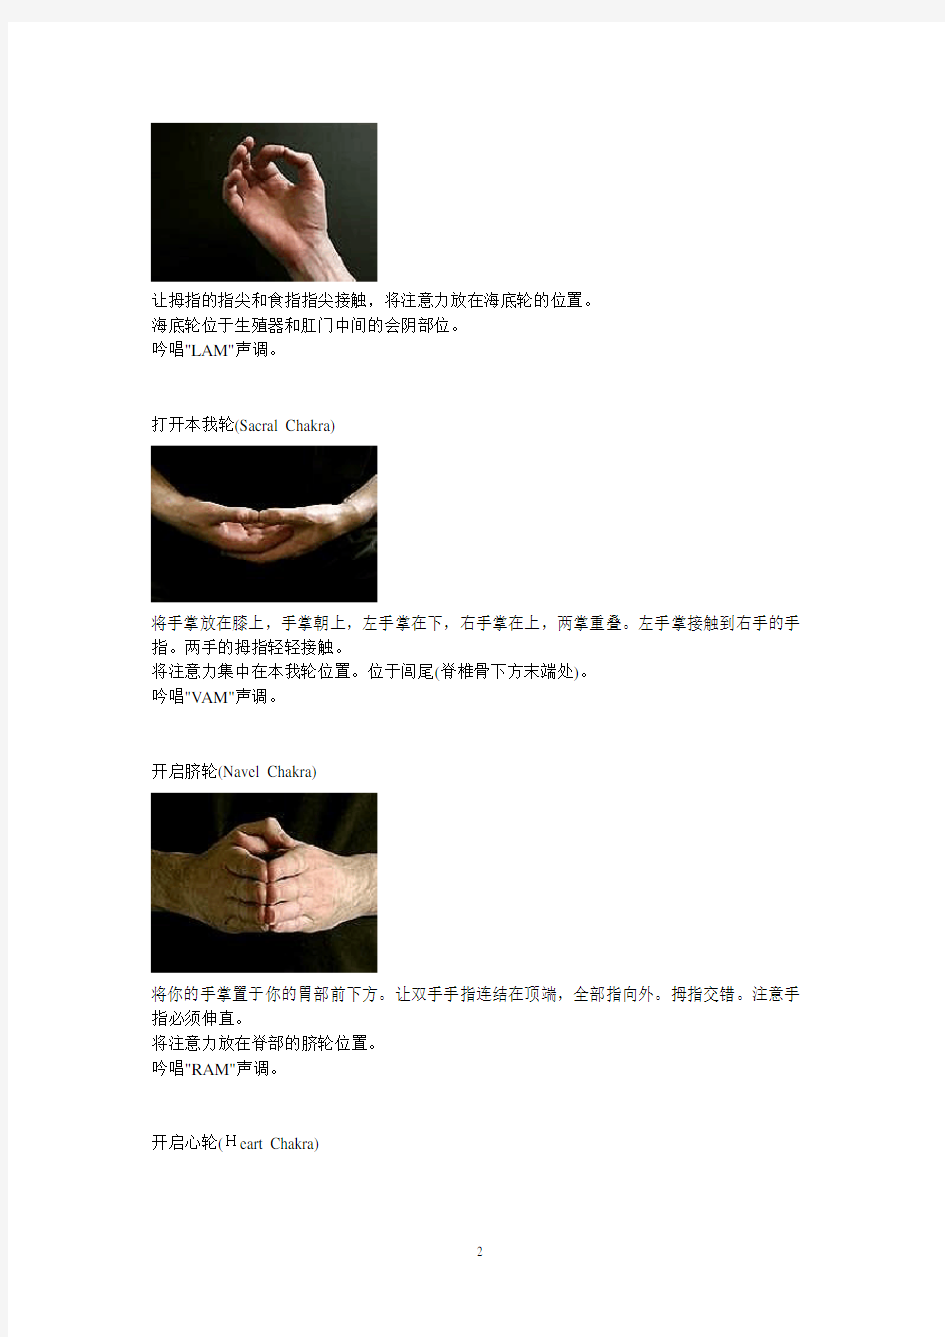 激活人体七个脉轮的手印(特殊的手势)和声音、静坐数息法